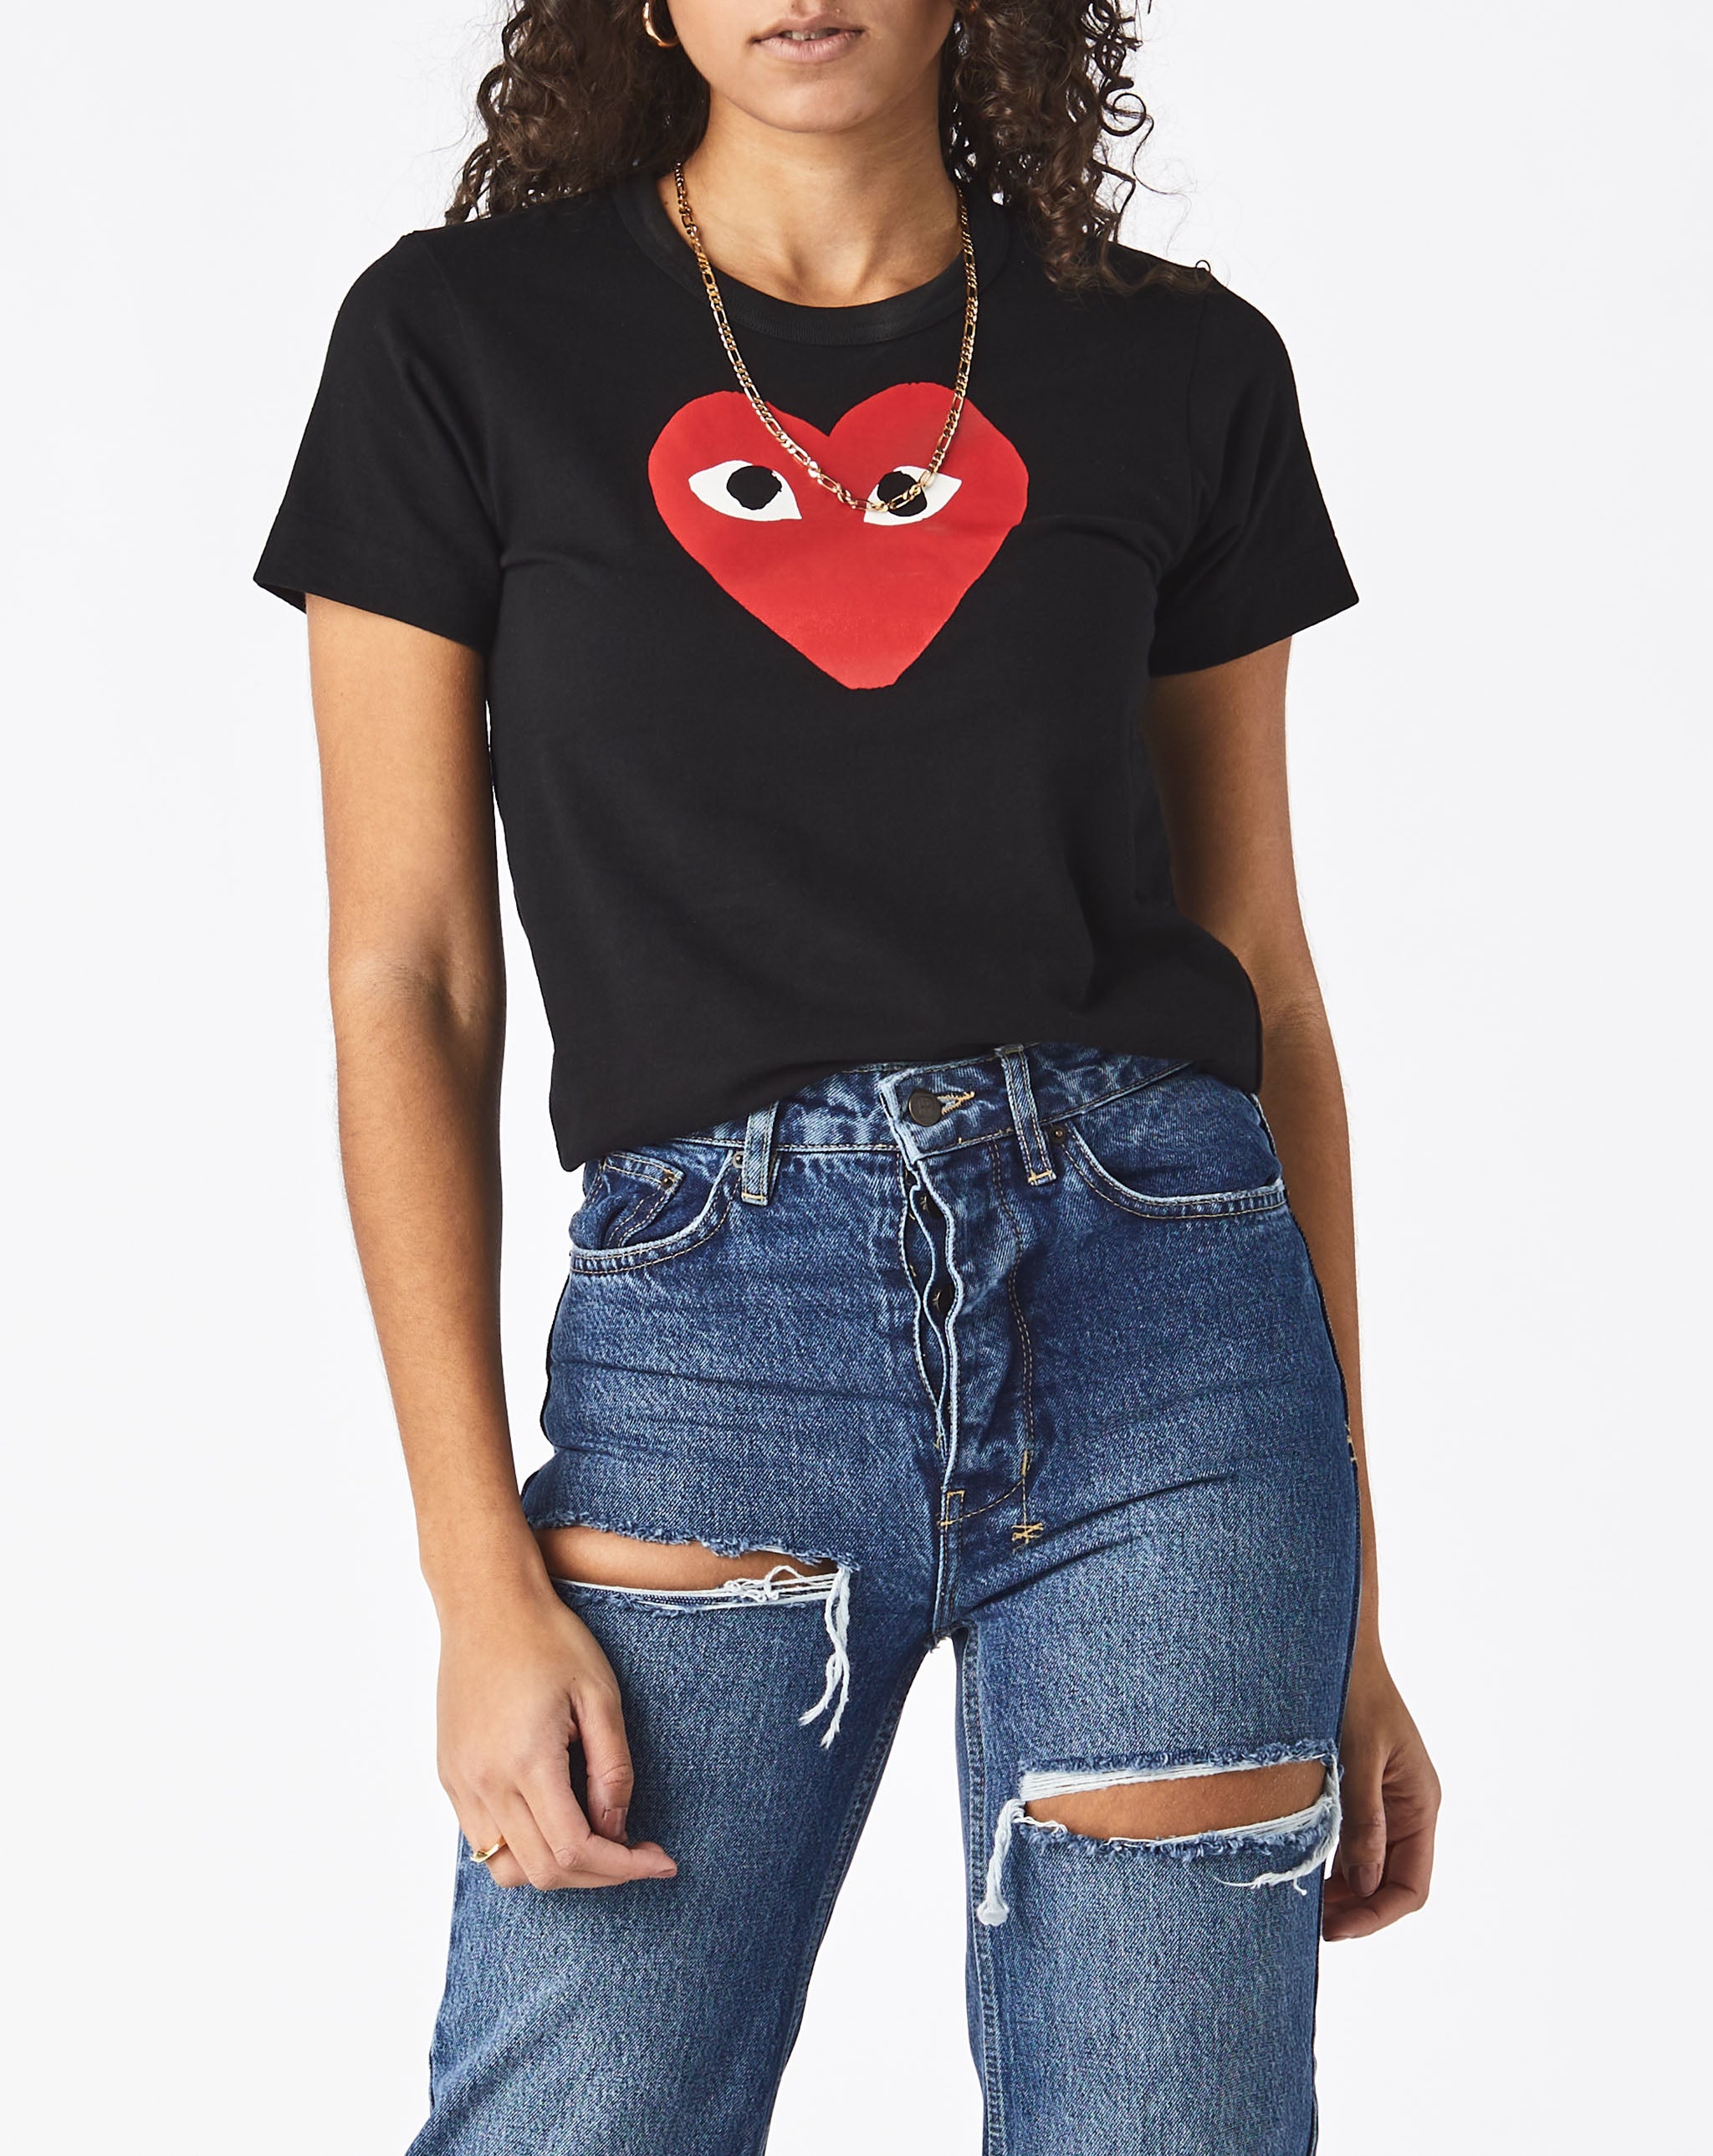 Womens Double Heart T-Shirt Women's Play T-Shirt  - Cheap Urlfreeze Jordan outlet